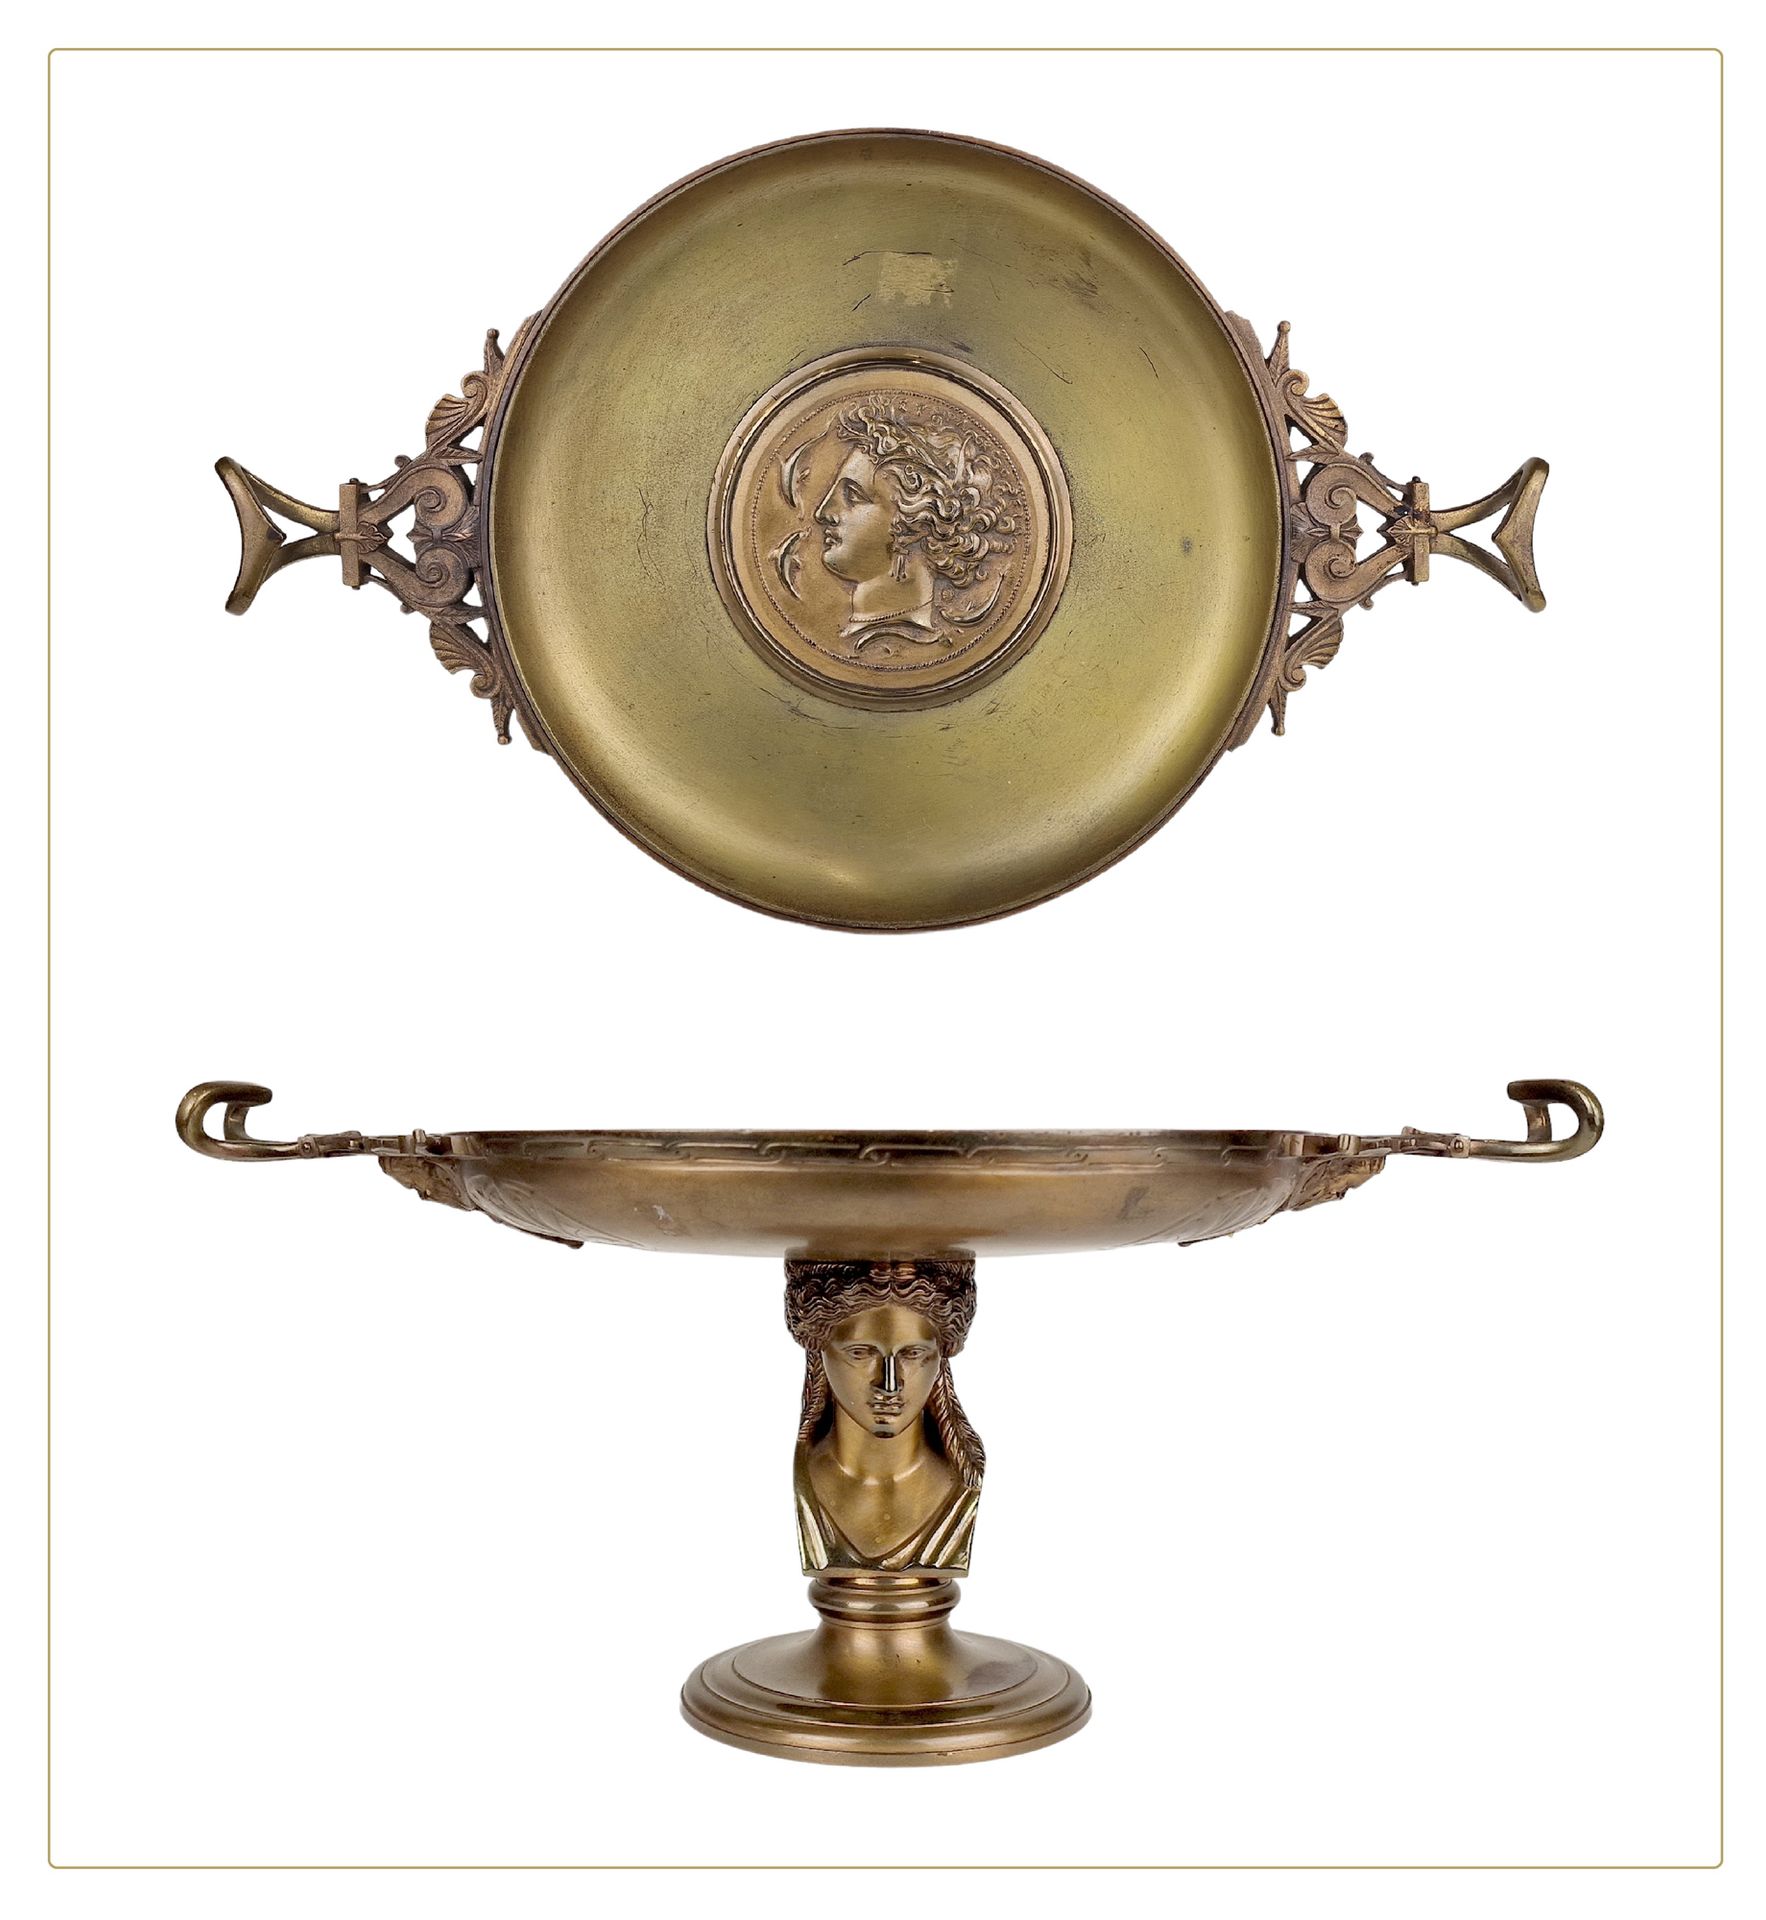 FERDINAND BARBEDIENNE, FONDEUR 希腊风格的碗



一个新希腊装饰的鎏金铜座碗，底座上雕刻着一个古典女性的半身像。签名和盖章的A.&hellip;